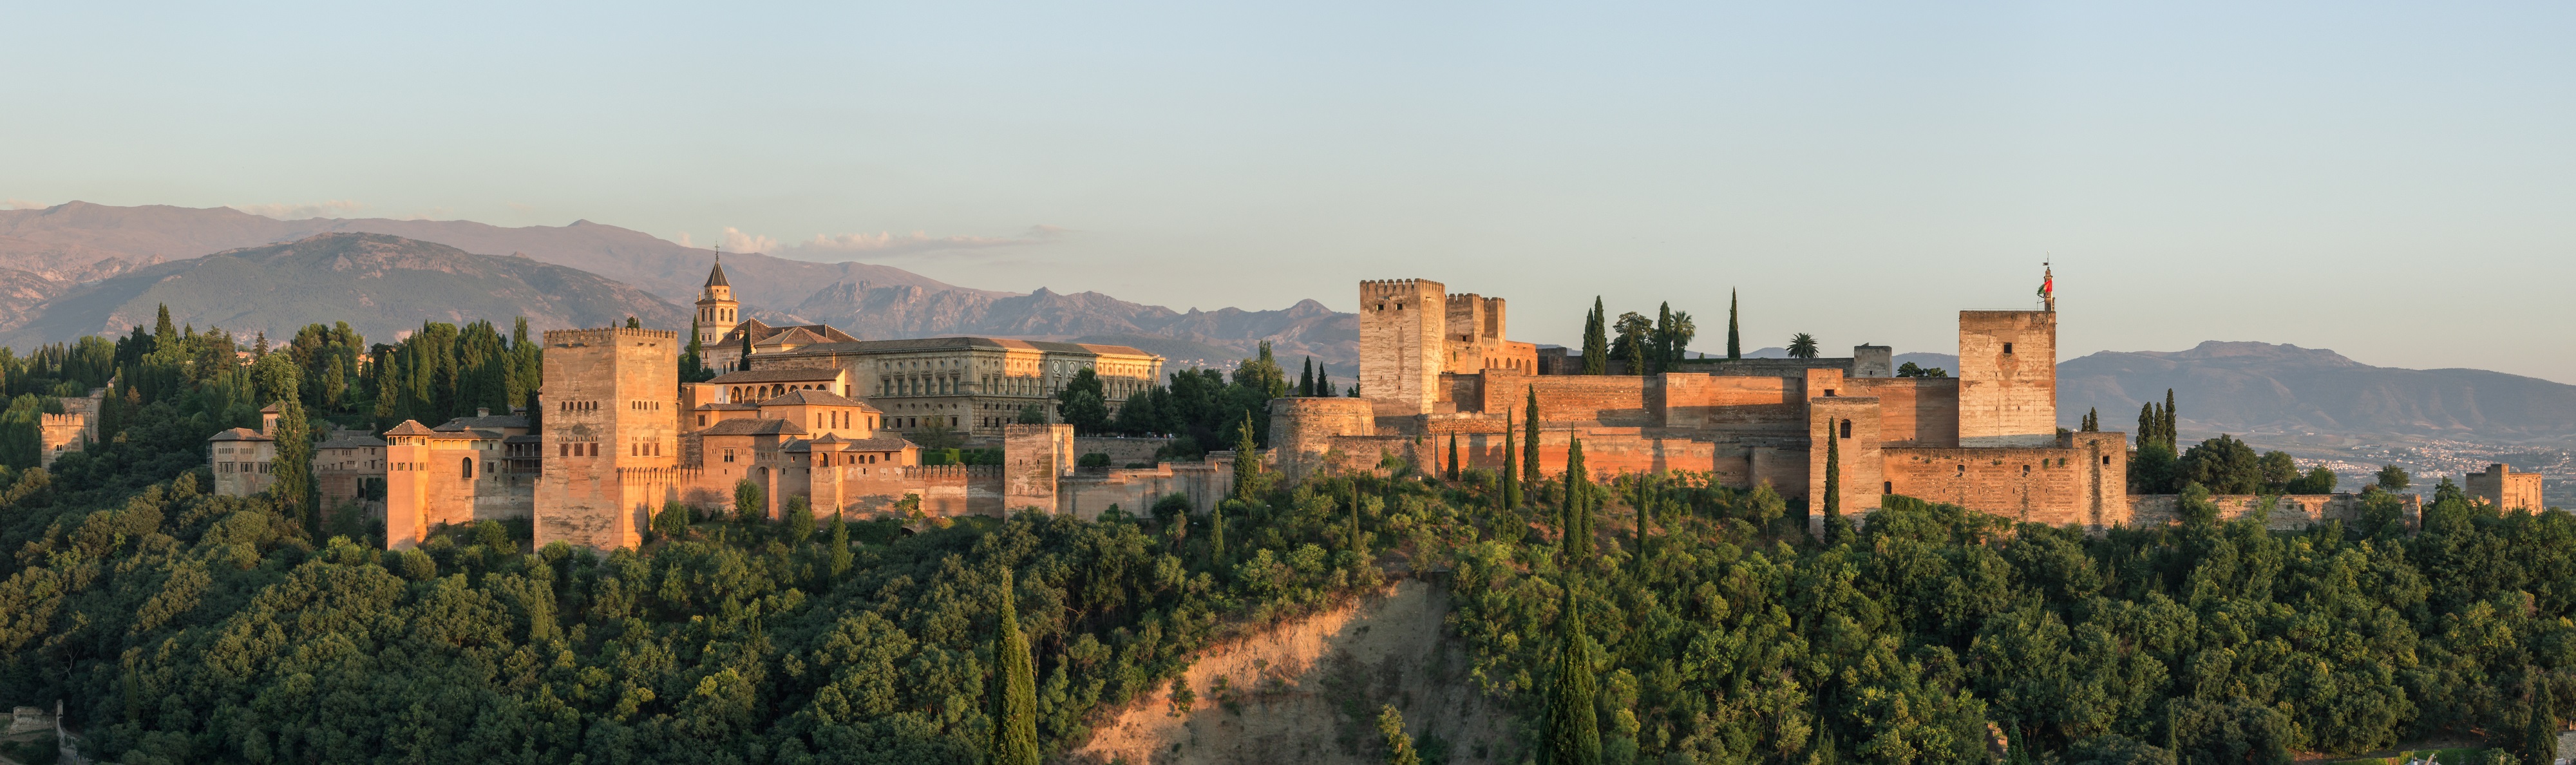 Vue de l'Alhambra de Grenade, depuis le quartier ancien de l'Albaicin ; ensemble palatial du XIIIe siècle (mais fondation plus ancienne), monument majeur de l'architecture arabo-musulmane, classée au patrimoine mondial de l'UNESCO. © Wikimedia Commons, domaine public.